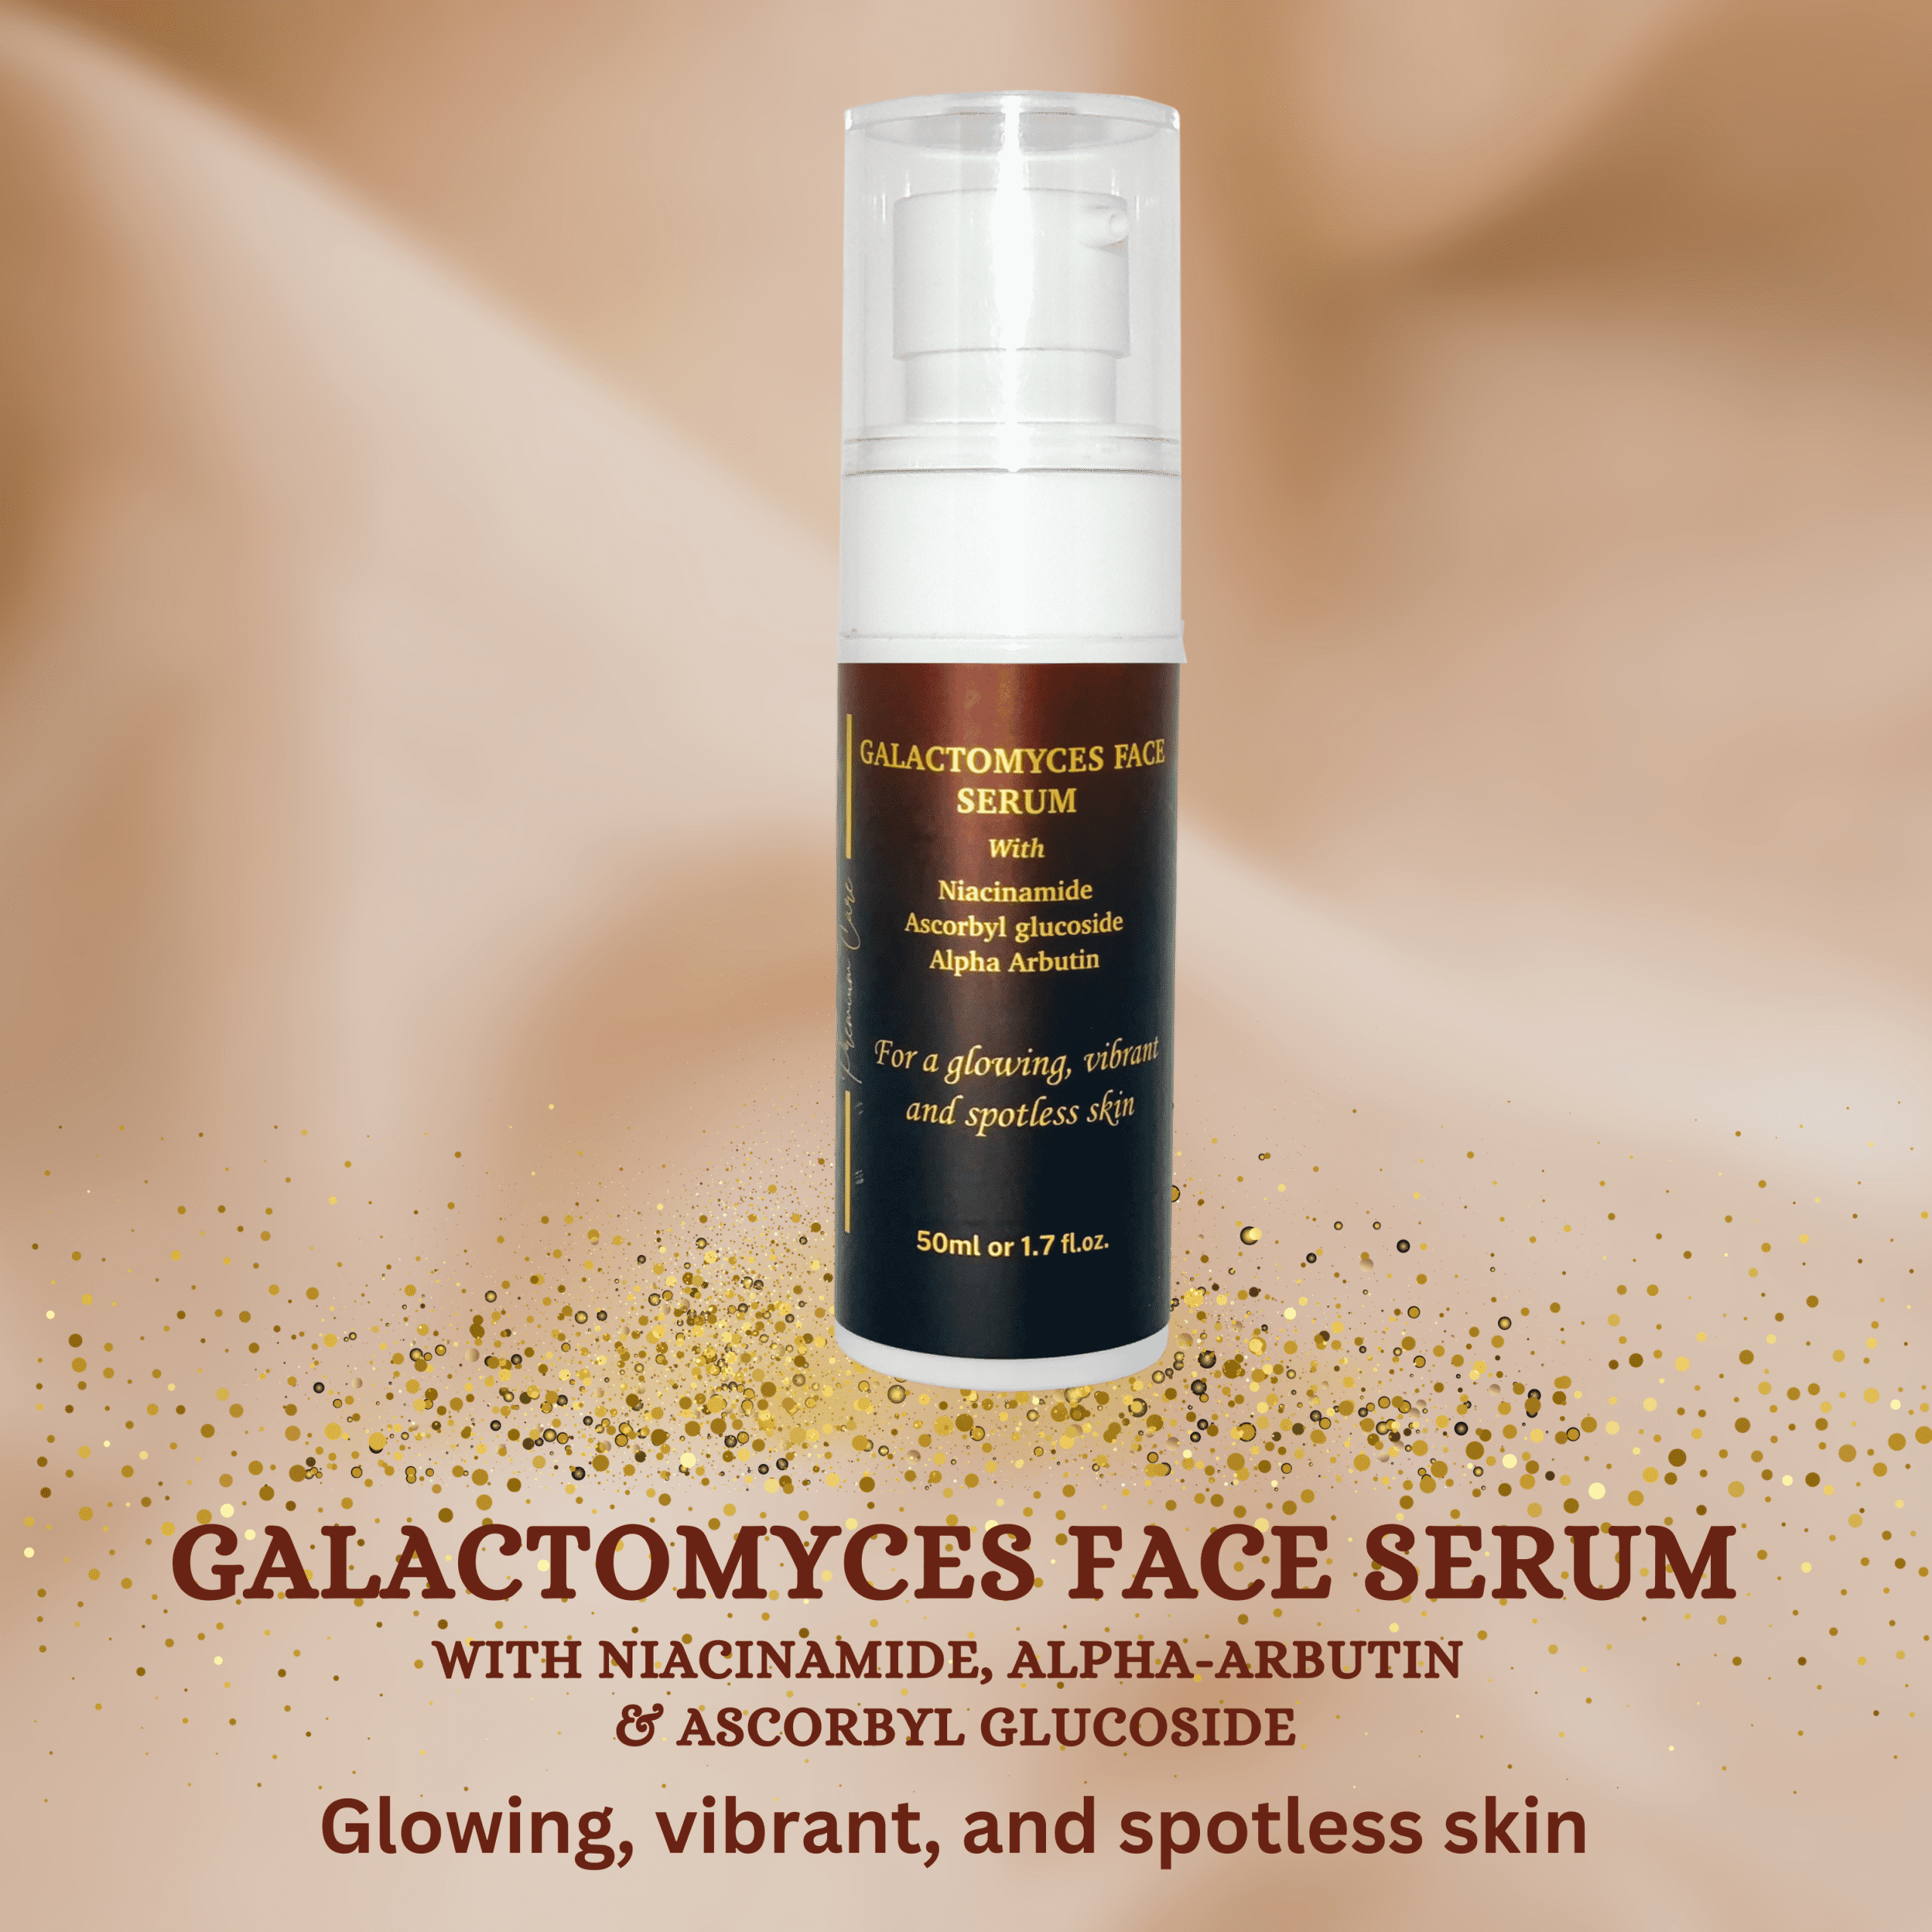 Galactomyces-face-serum-slides.png